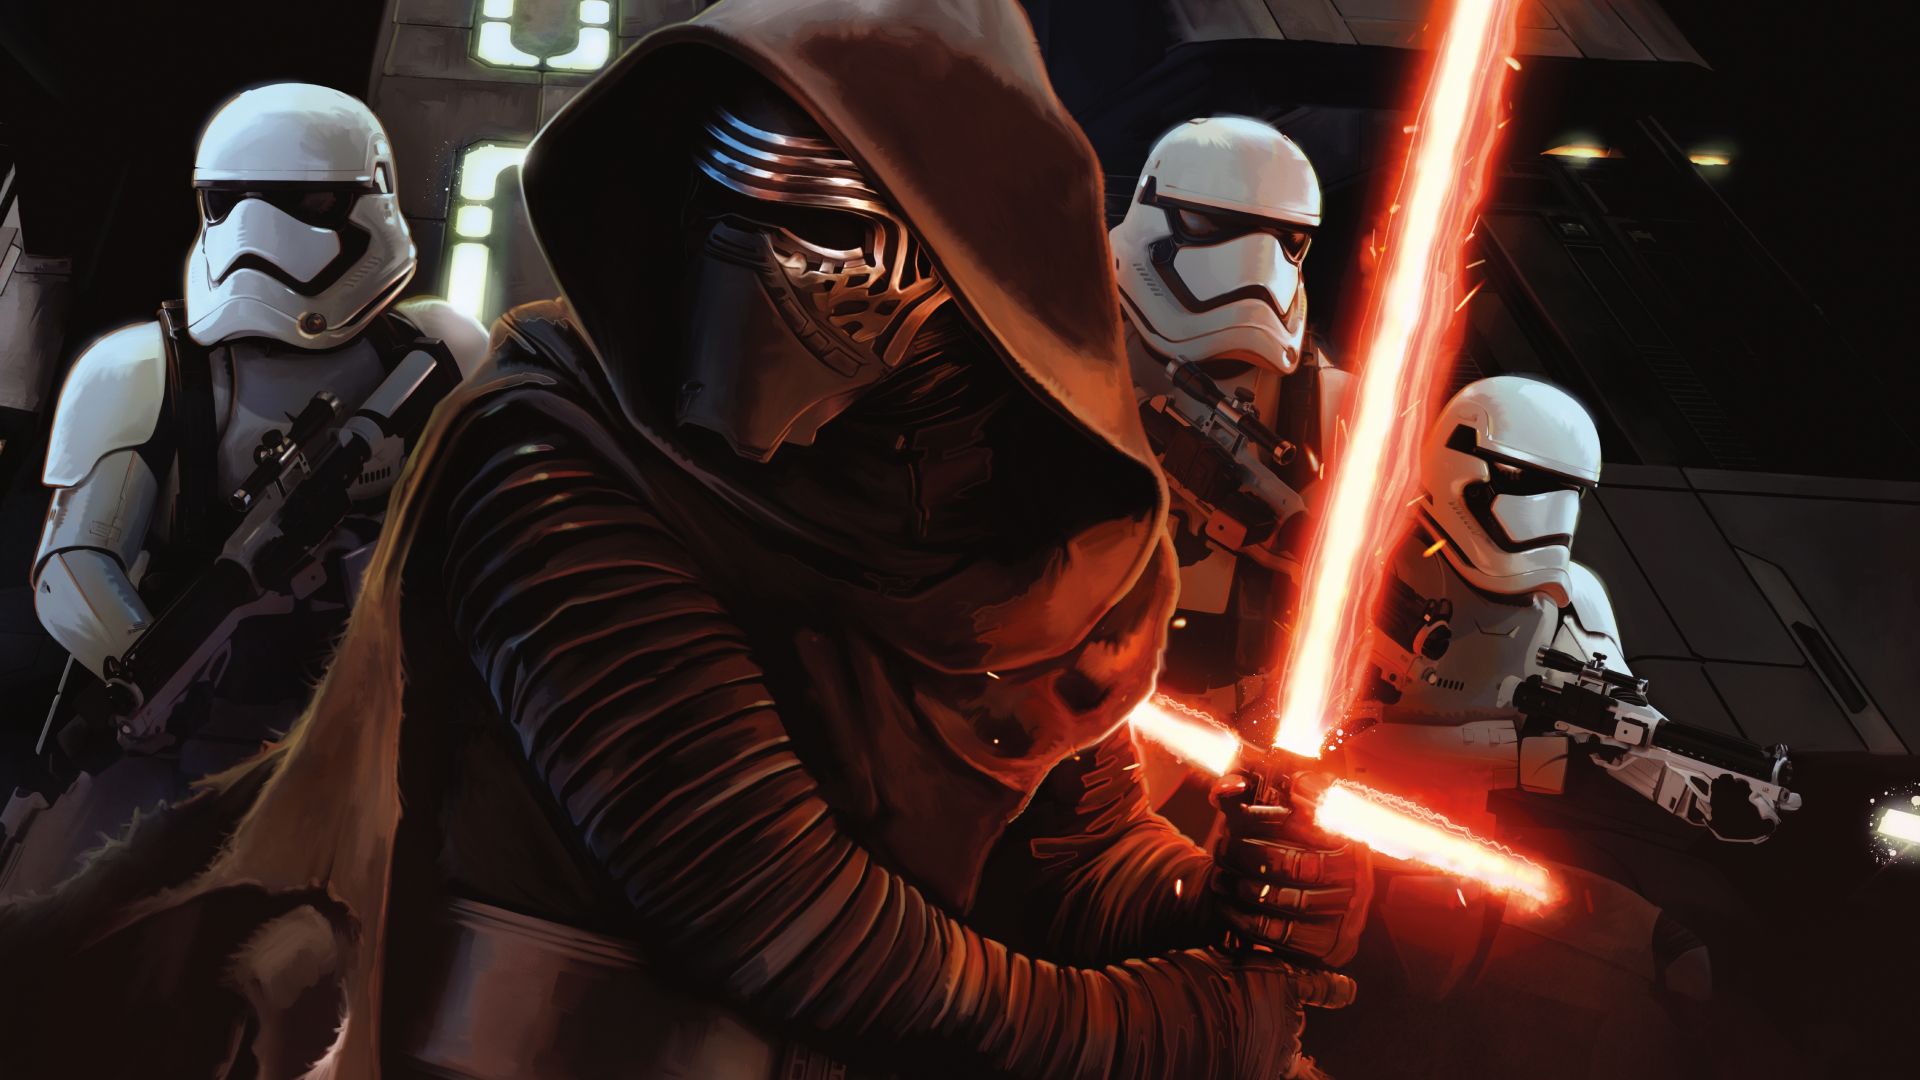 Звёздные войны: Пробуждение силы, Star Wars: Episode VII - The Force Awakens, clone trooper (horizontal)